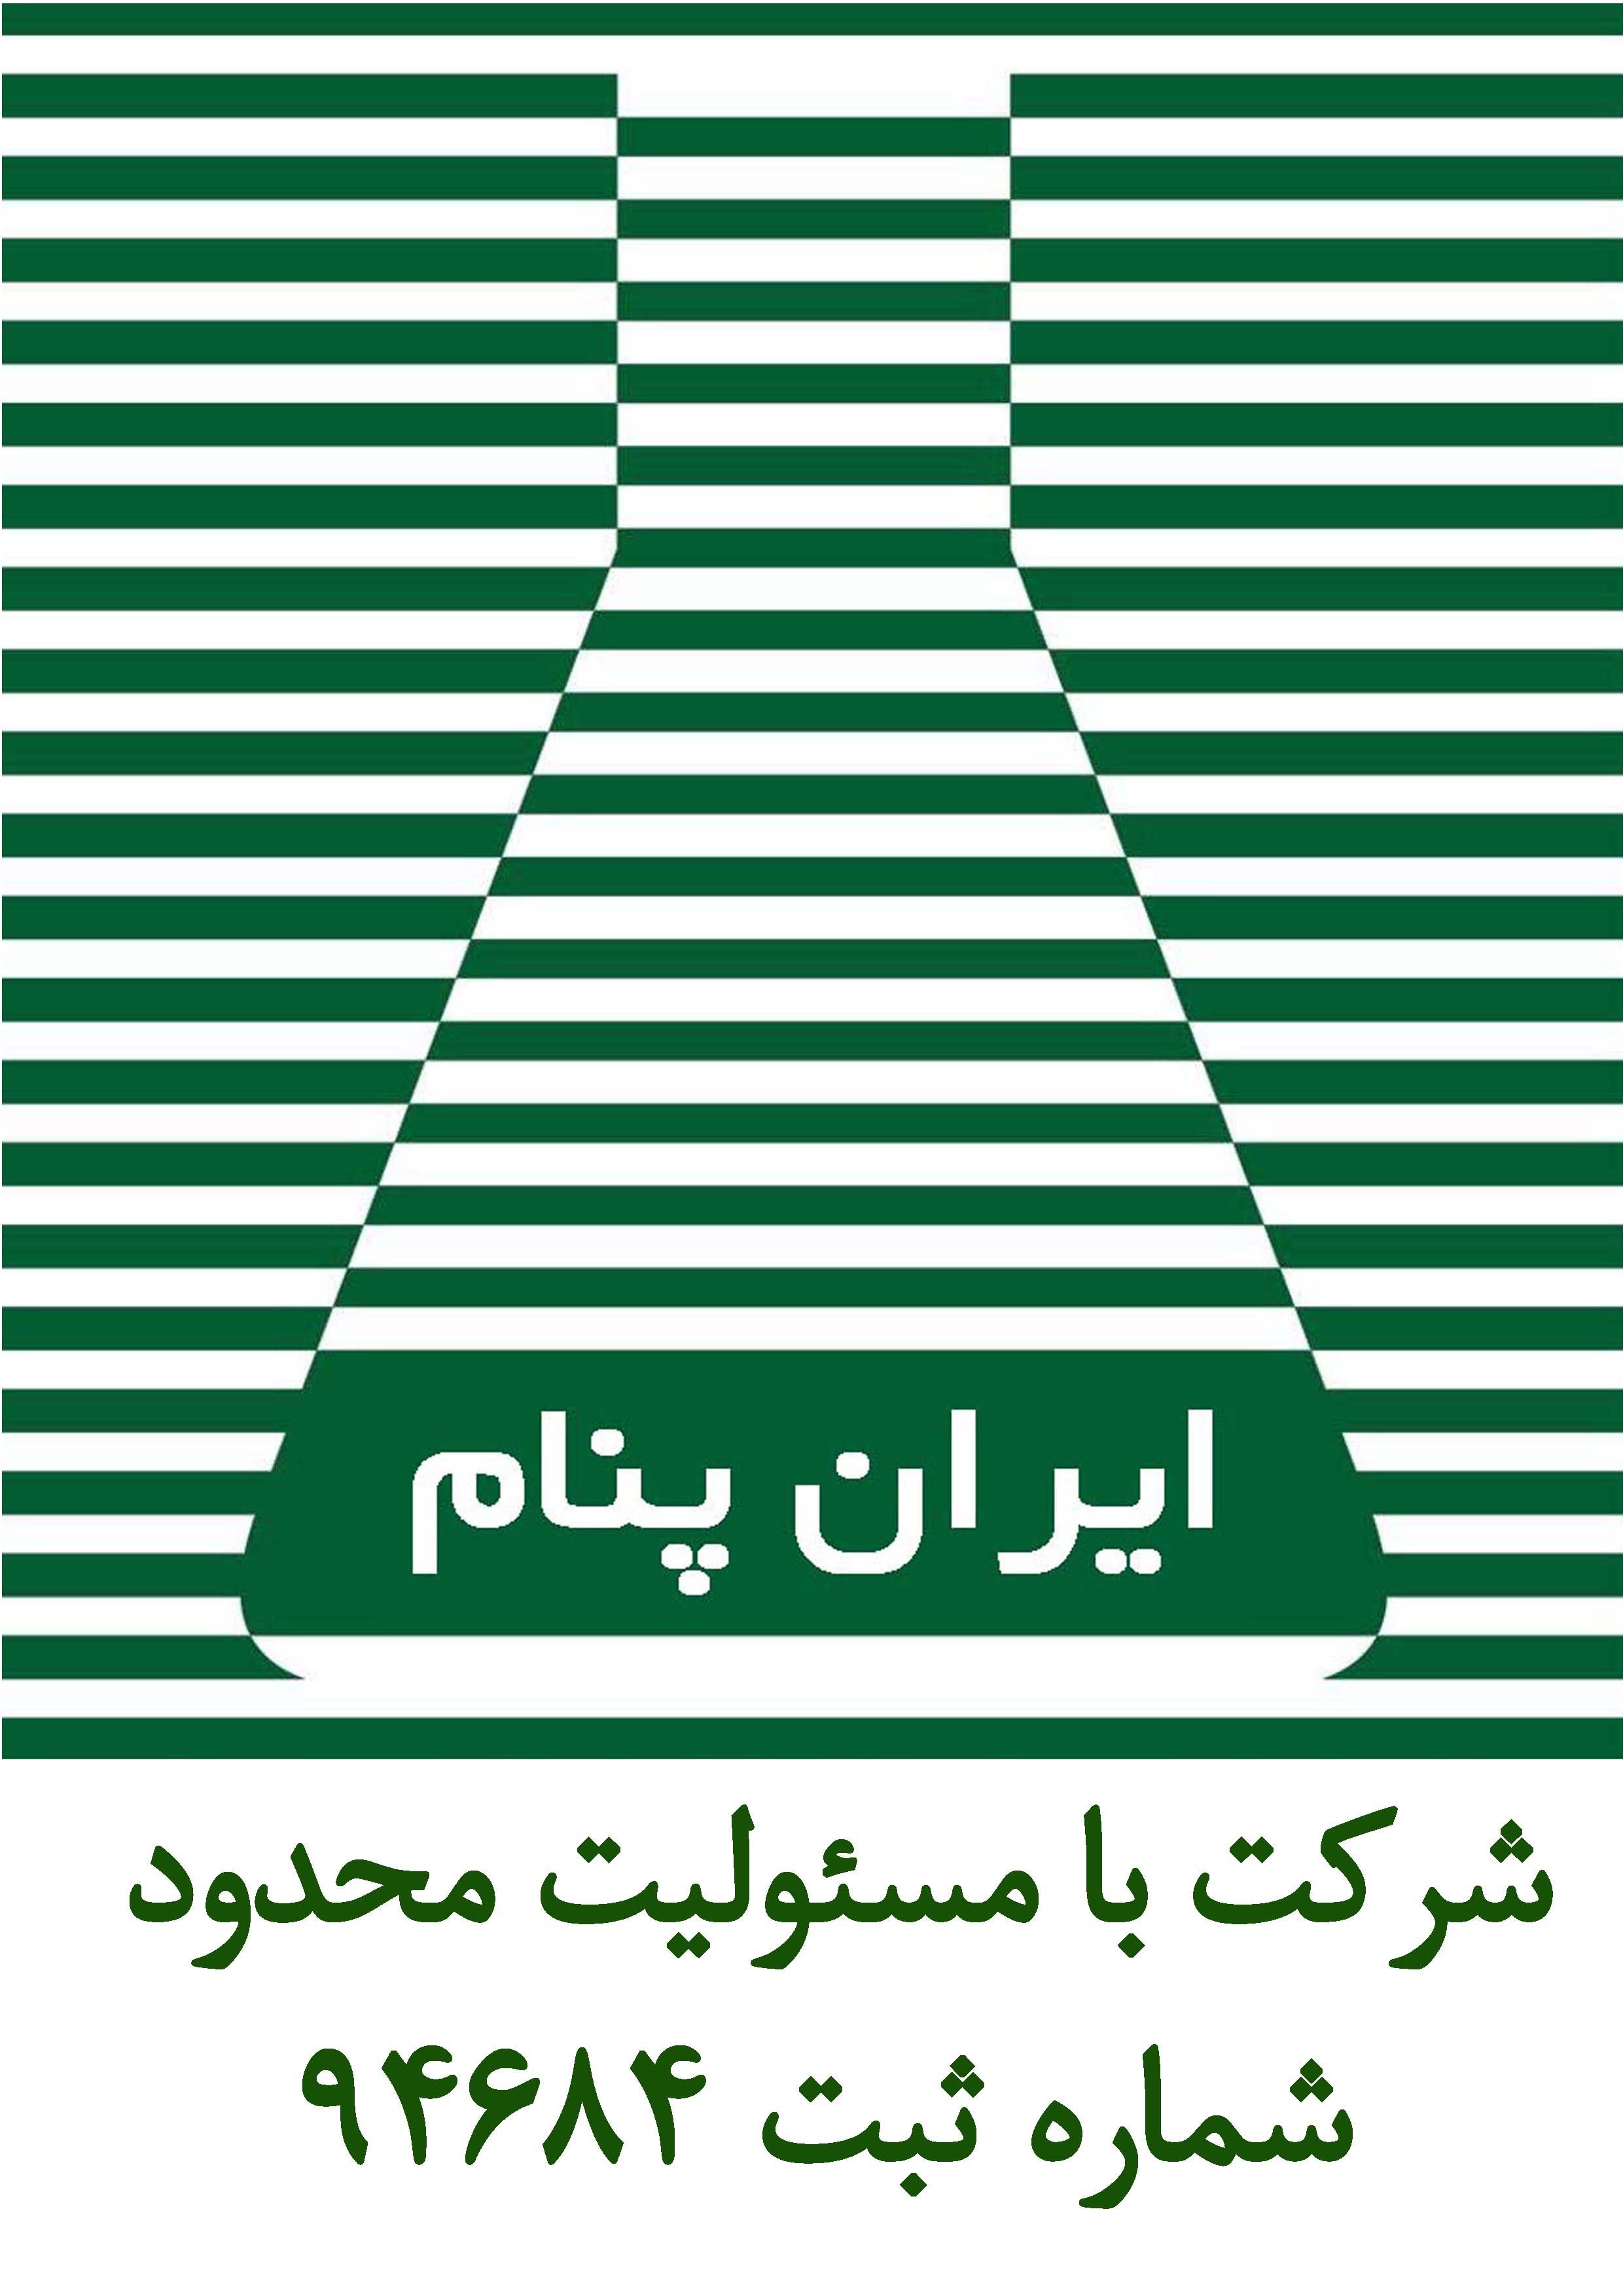 شرکت ایران پنام